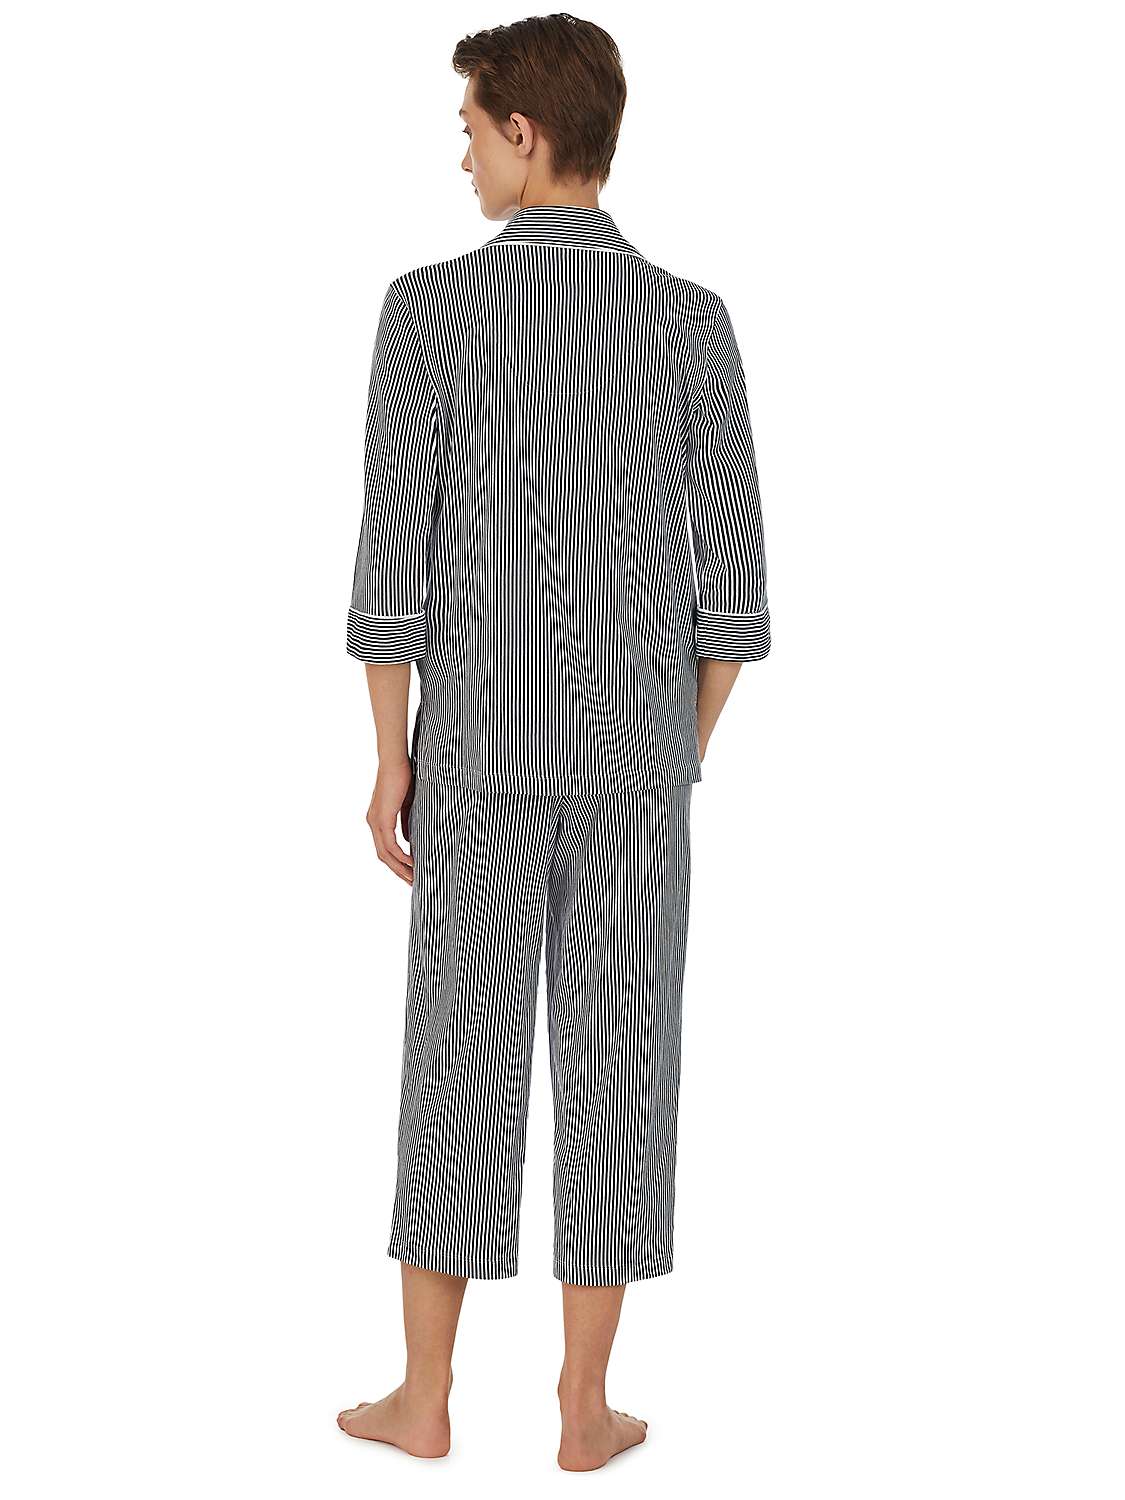 Buy Lauren Ralph Lauren 3/4 Sleeve Capri Stripe Pyjamas, Navy Online at johnlewis.com